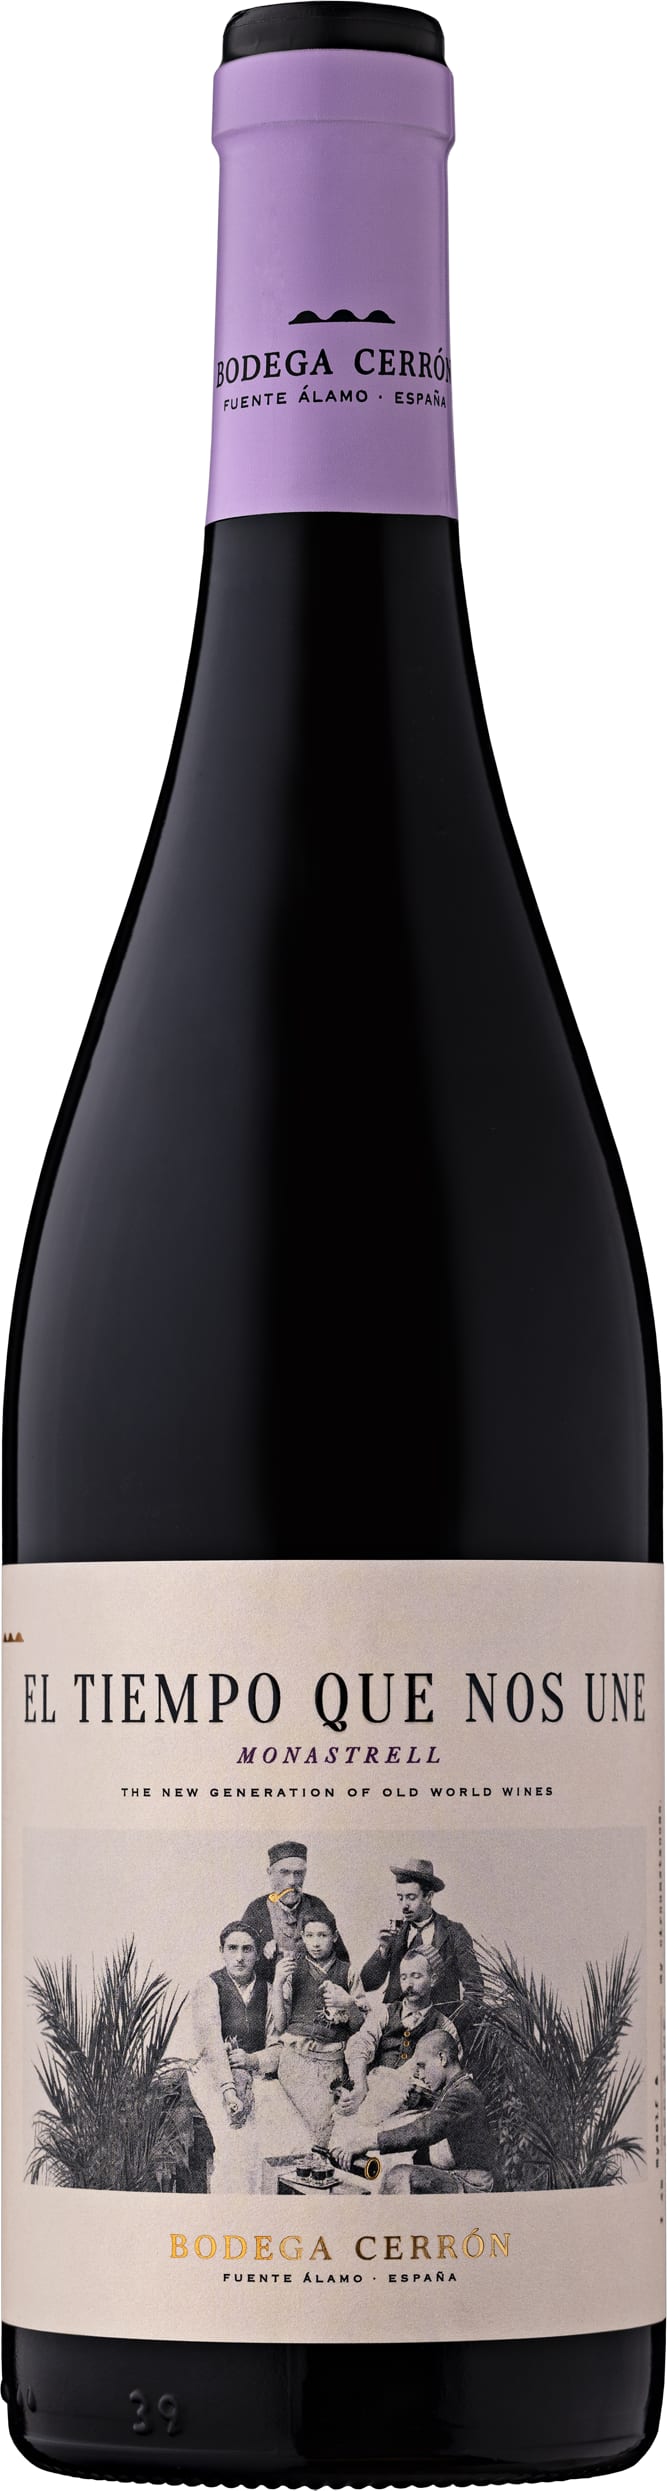 Bodega Cerron El Tiempo Que Nos Une Monastrell 2022 75cl - Buy Bodega Cerron Wines from GREAT WINES DIRECT wine shop